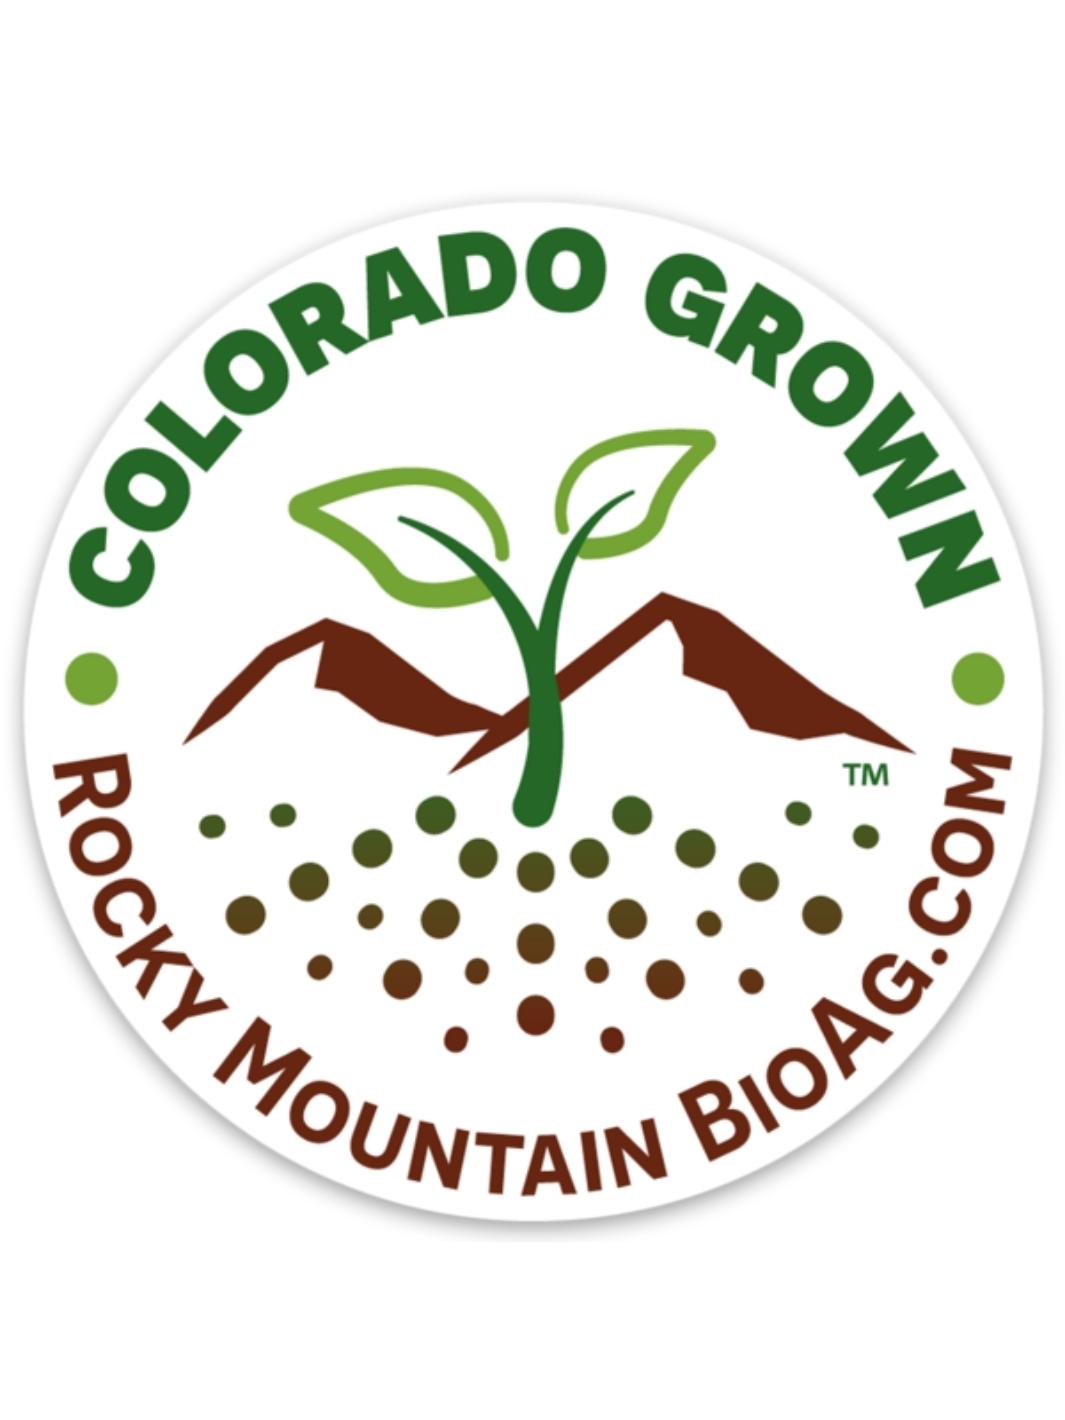 Rocky Mountain BioAg Colorado Grown Vinyl Sticker